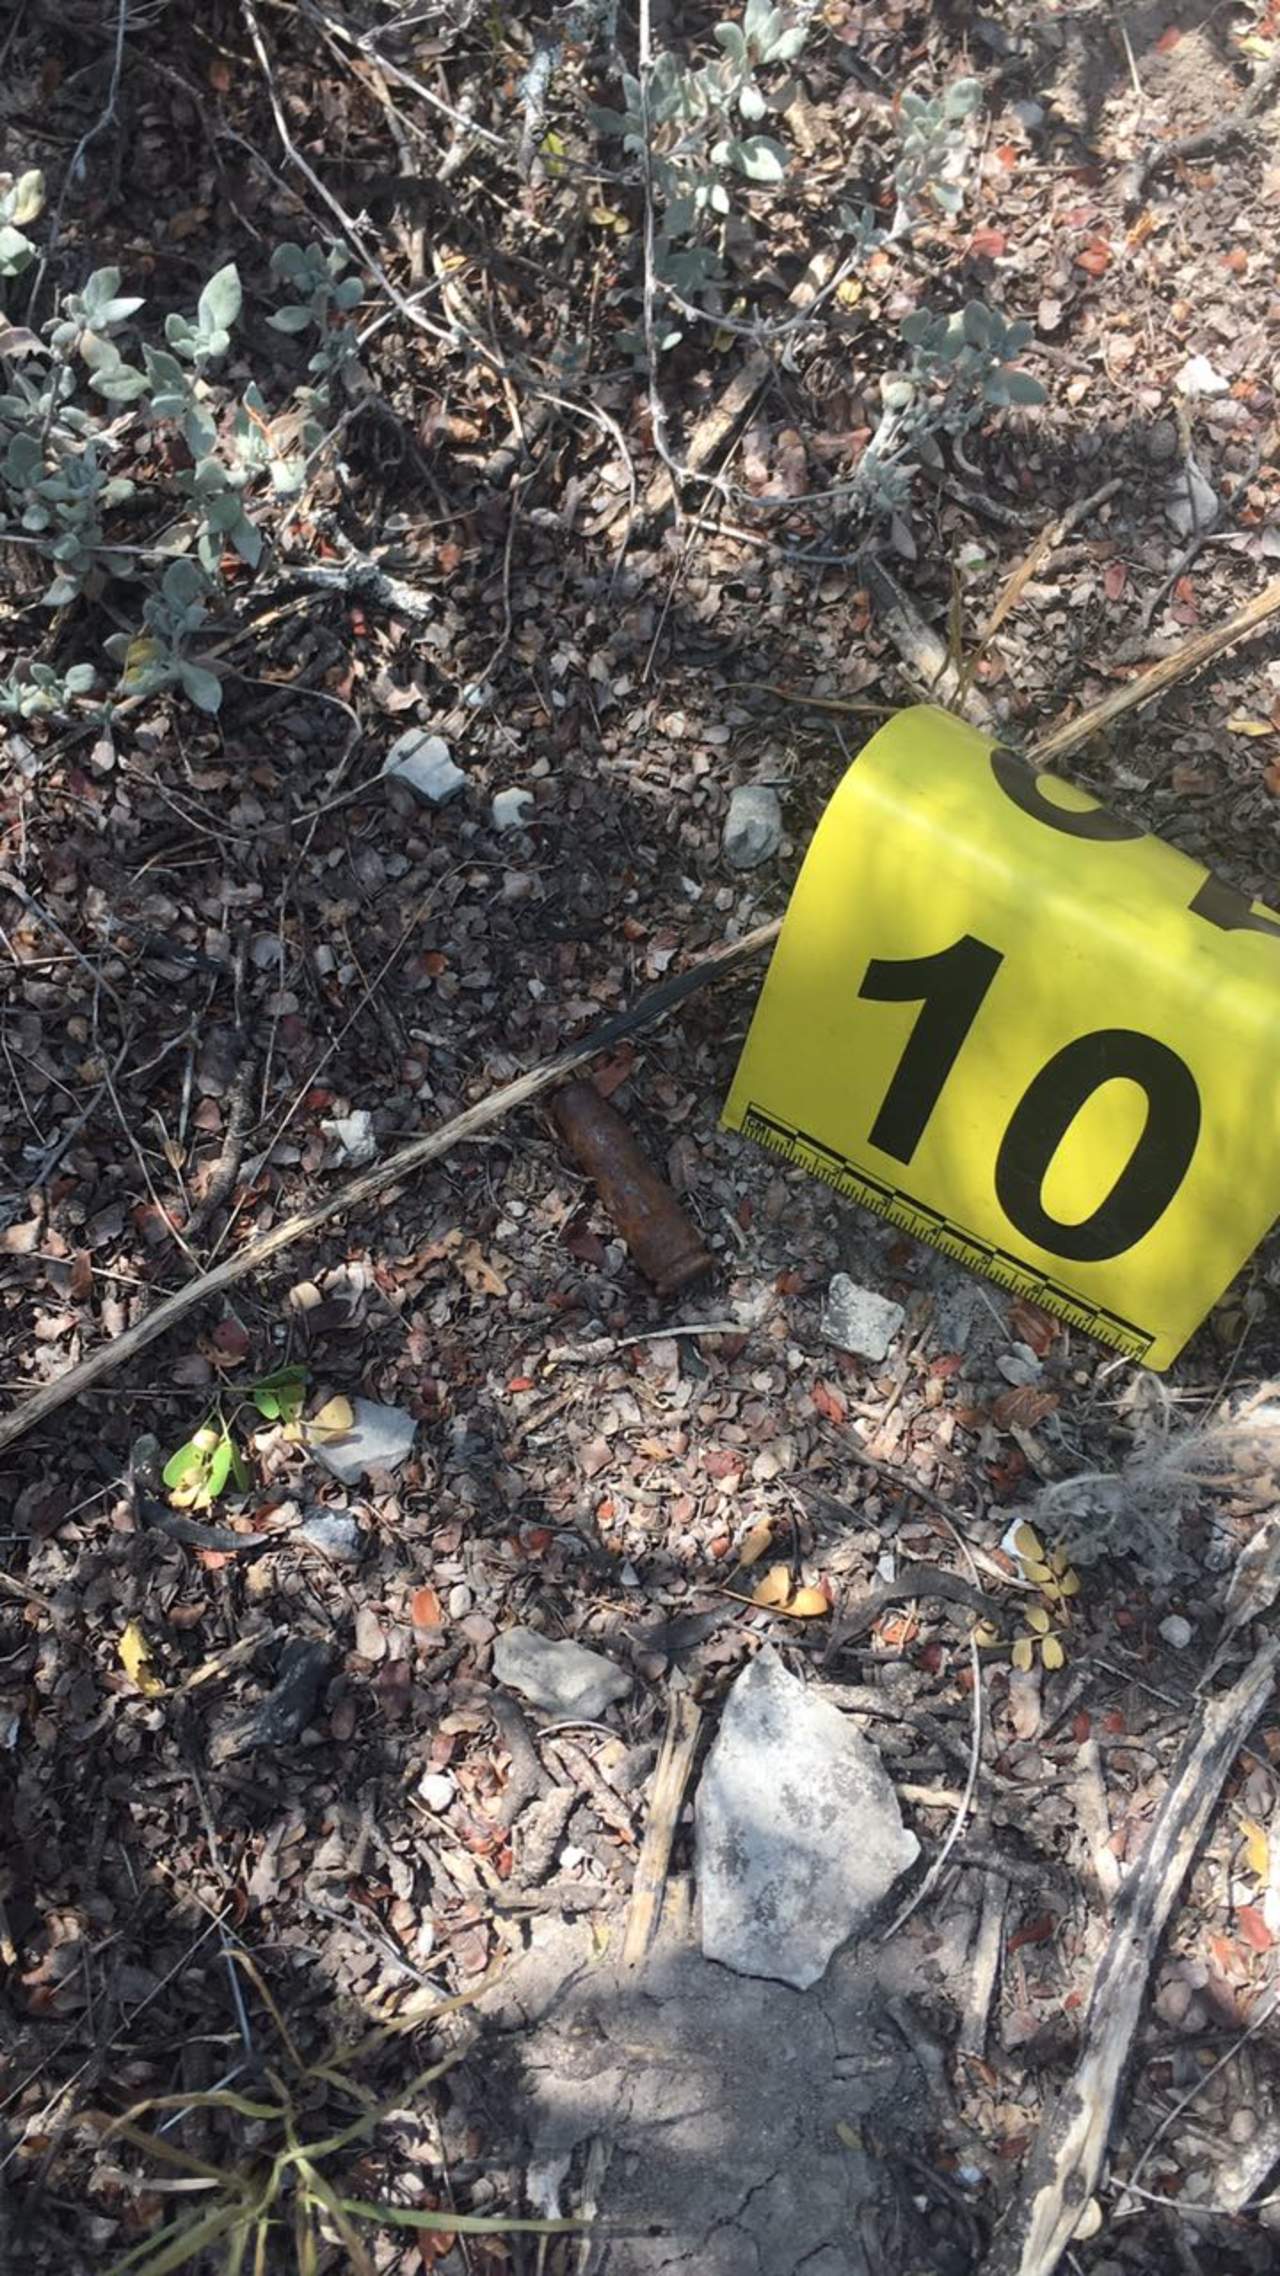 En el lugar fueron localizados los fragmentos, mismos que fueron levantados por el personal forense que participa en el operativo.